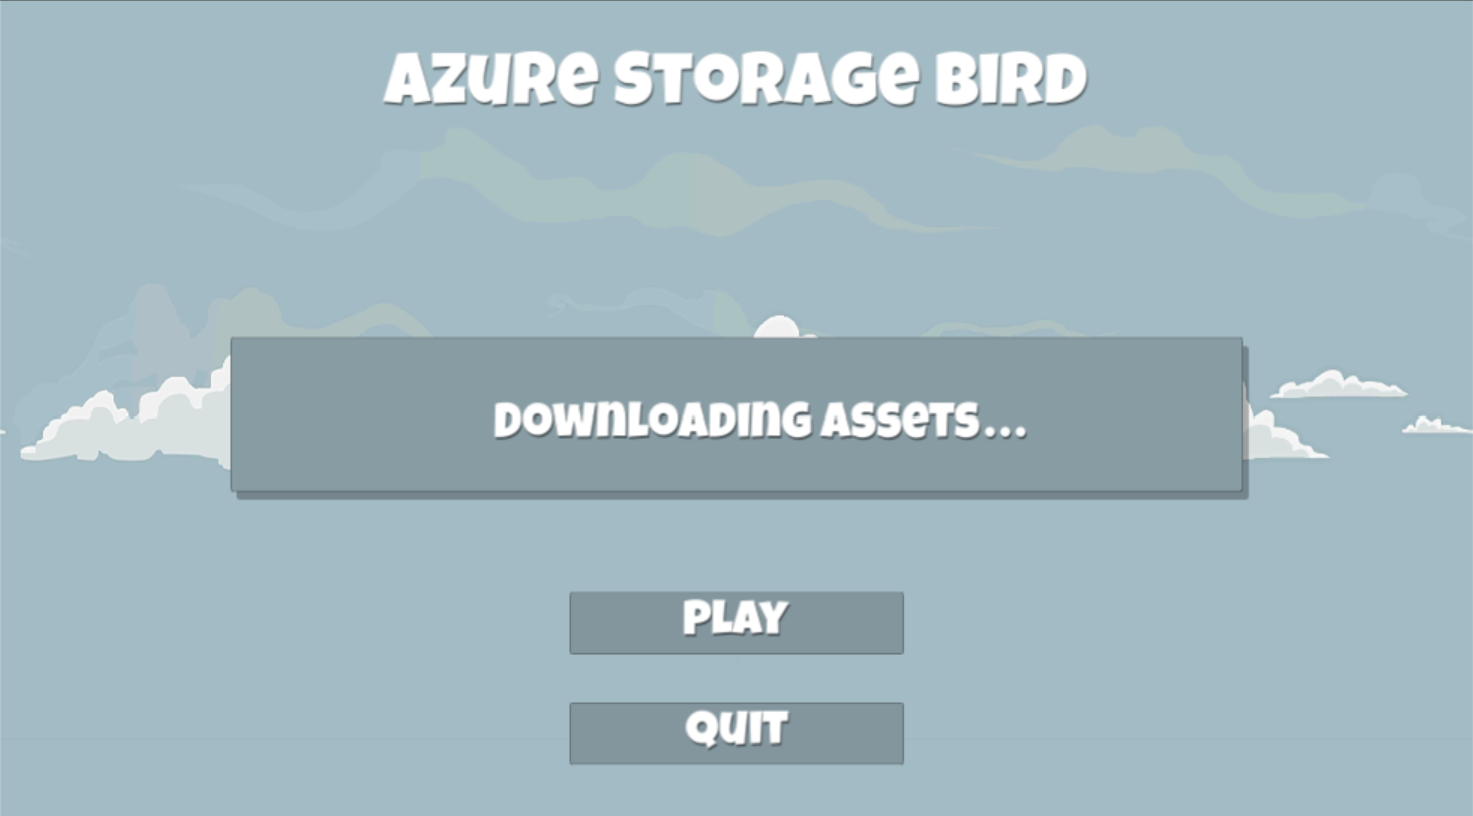 Azure Storage Bird heading image